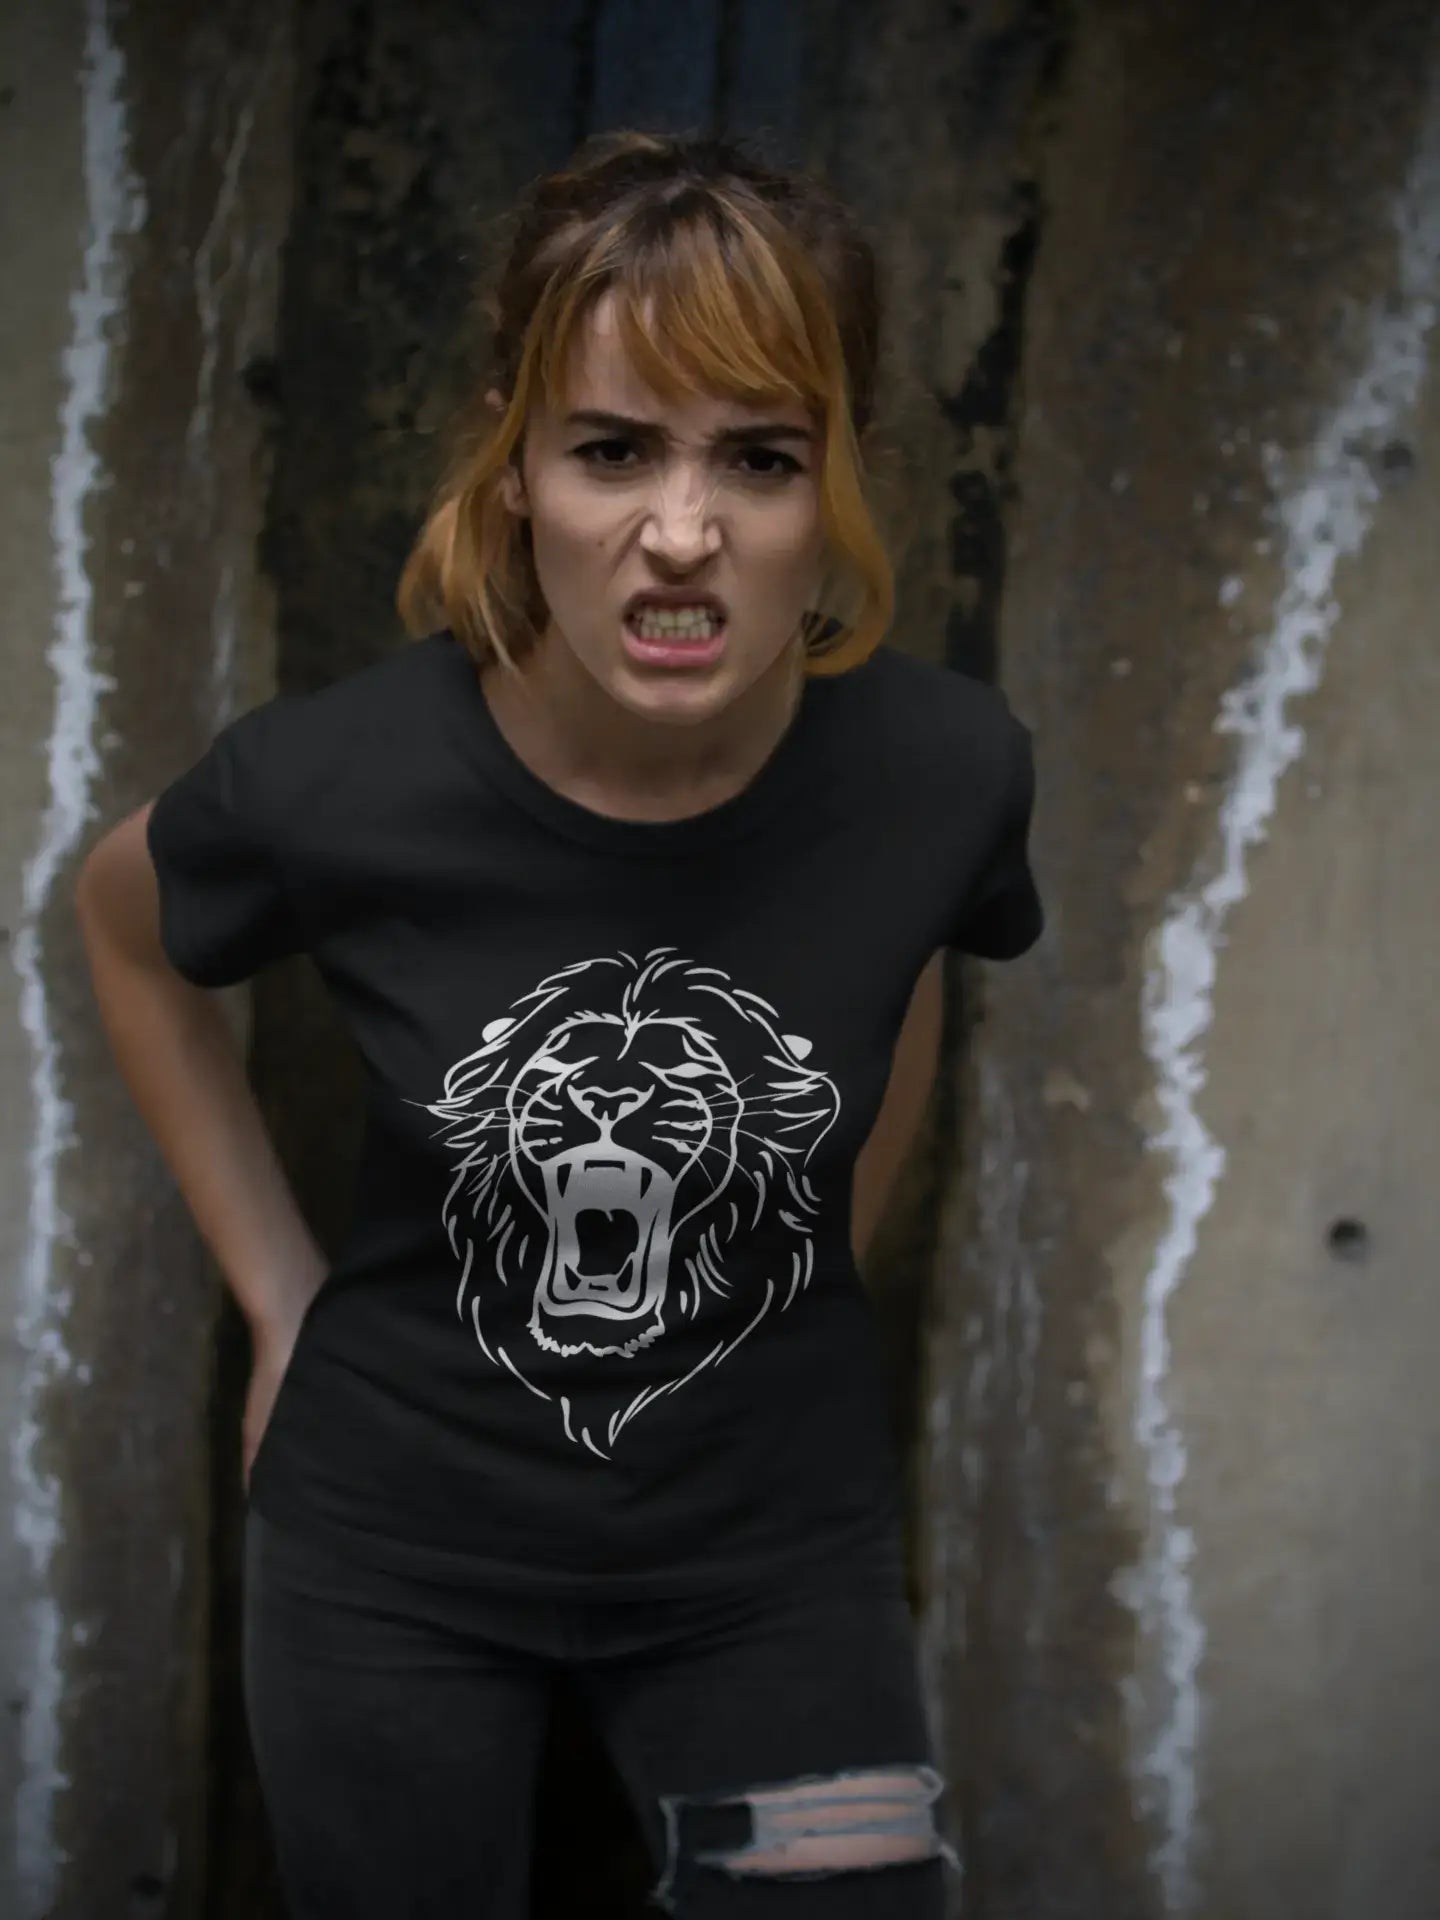 Angry Lion Head Tattoo Black Gift Tshirt, Black Women's T-shirt 00165